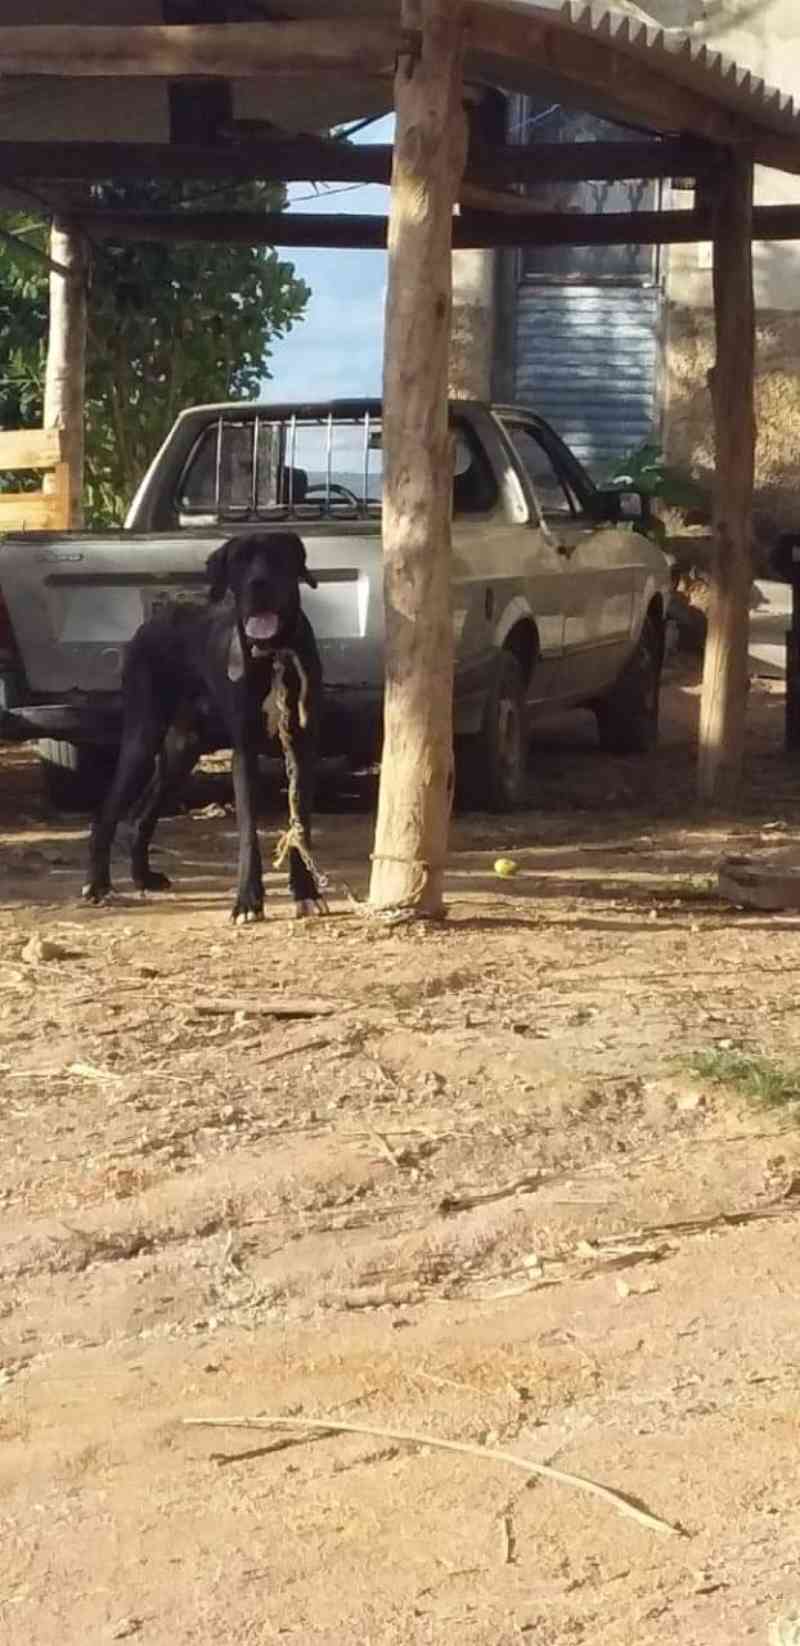 Associação São Francisco com apoio da PM resgata cão em situação de maus-tratos em Carmo do Rio Claro, MG